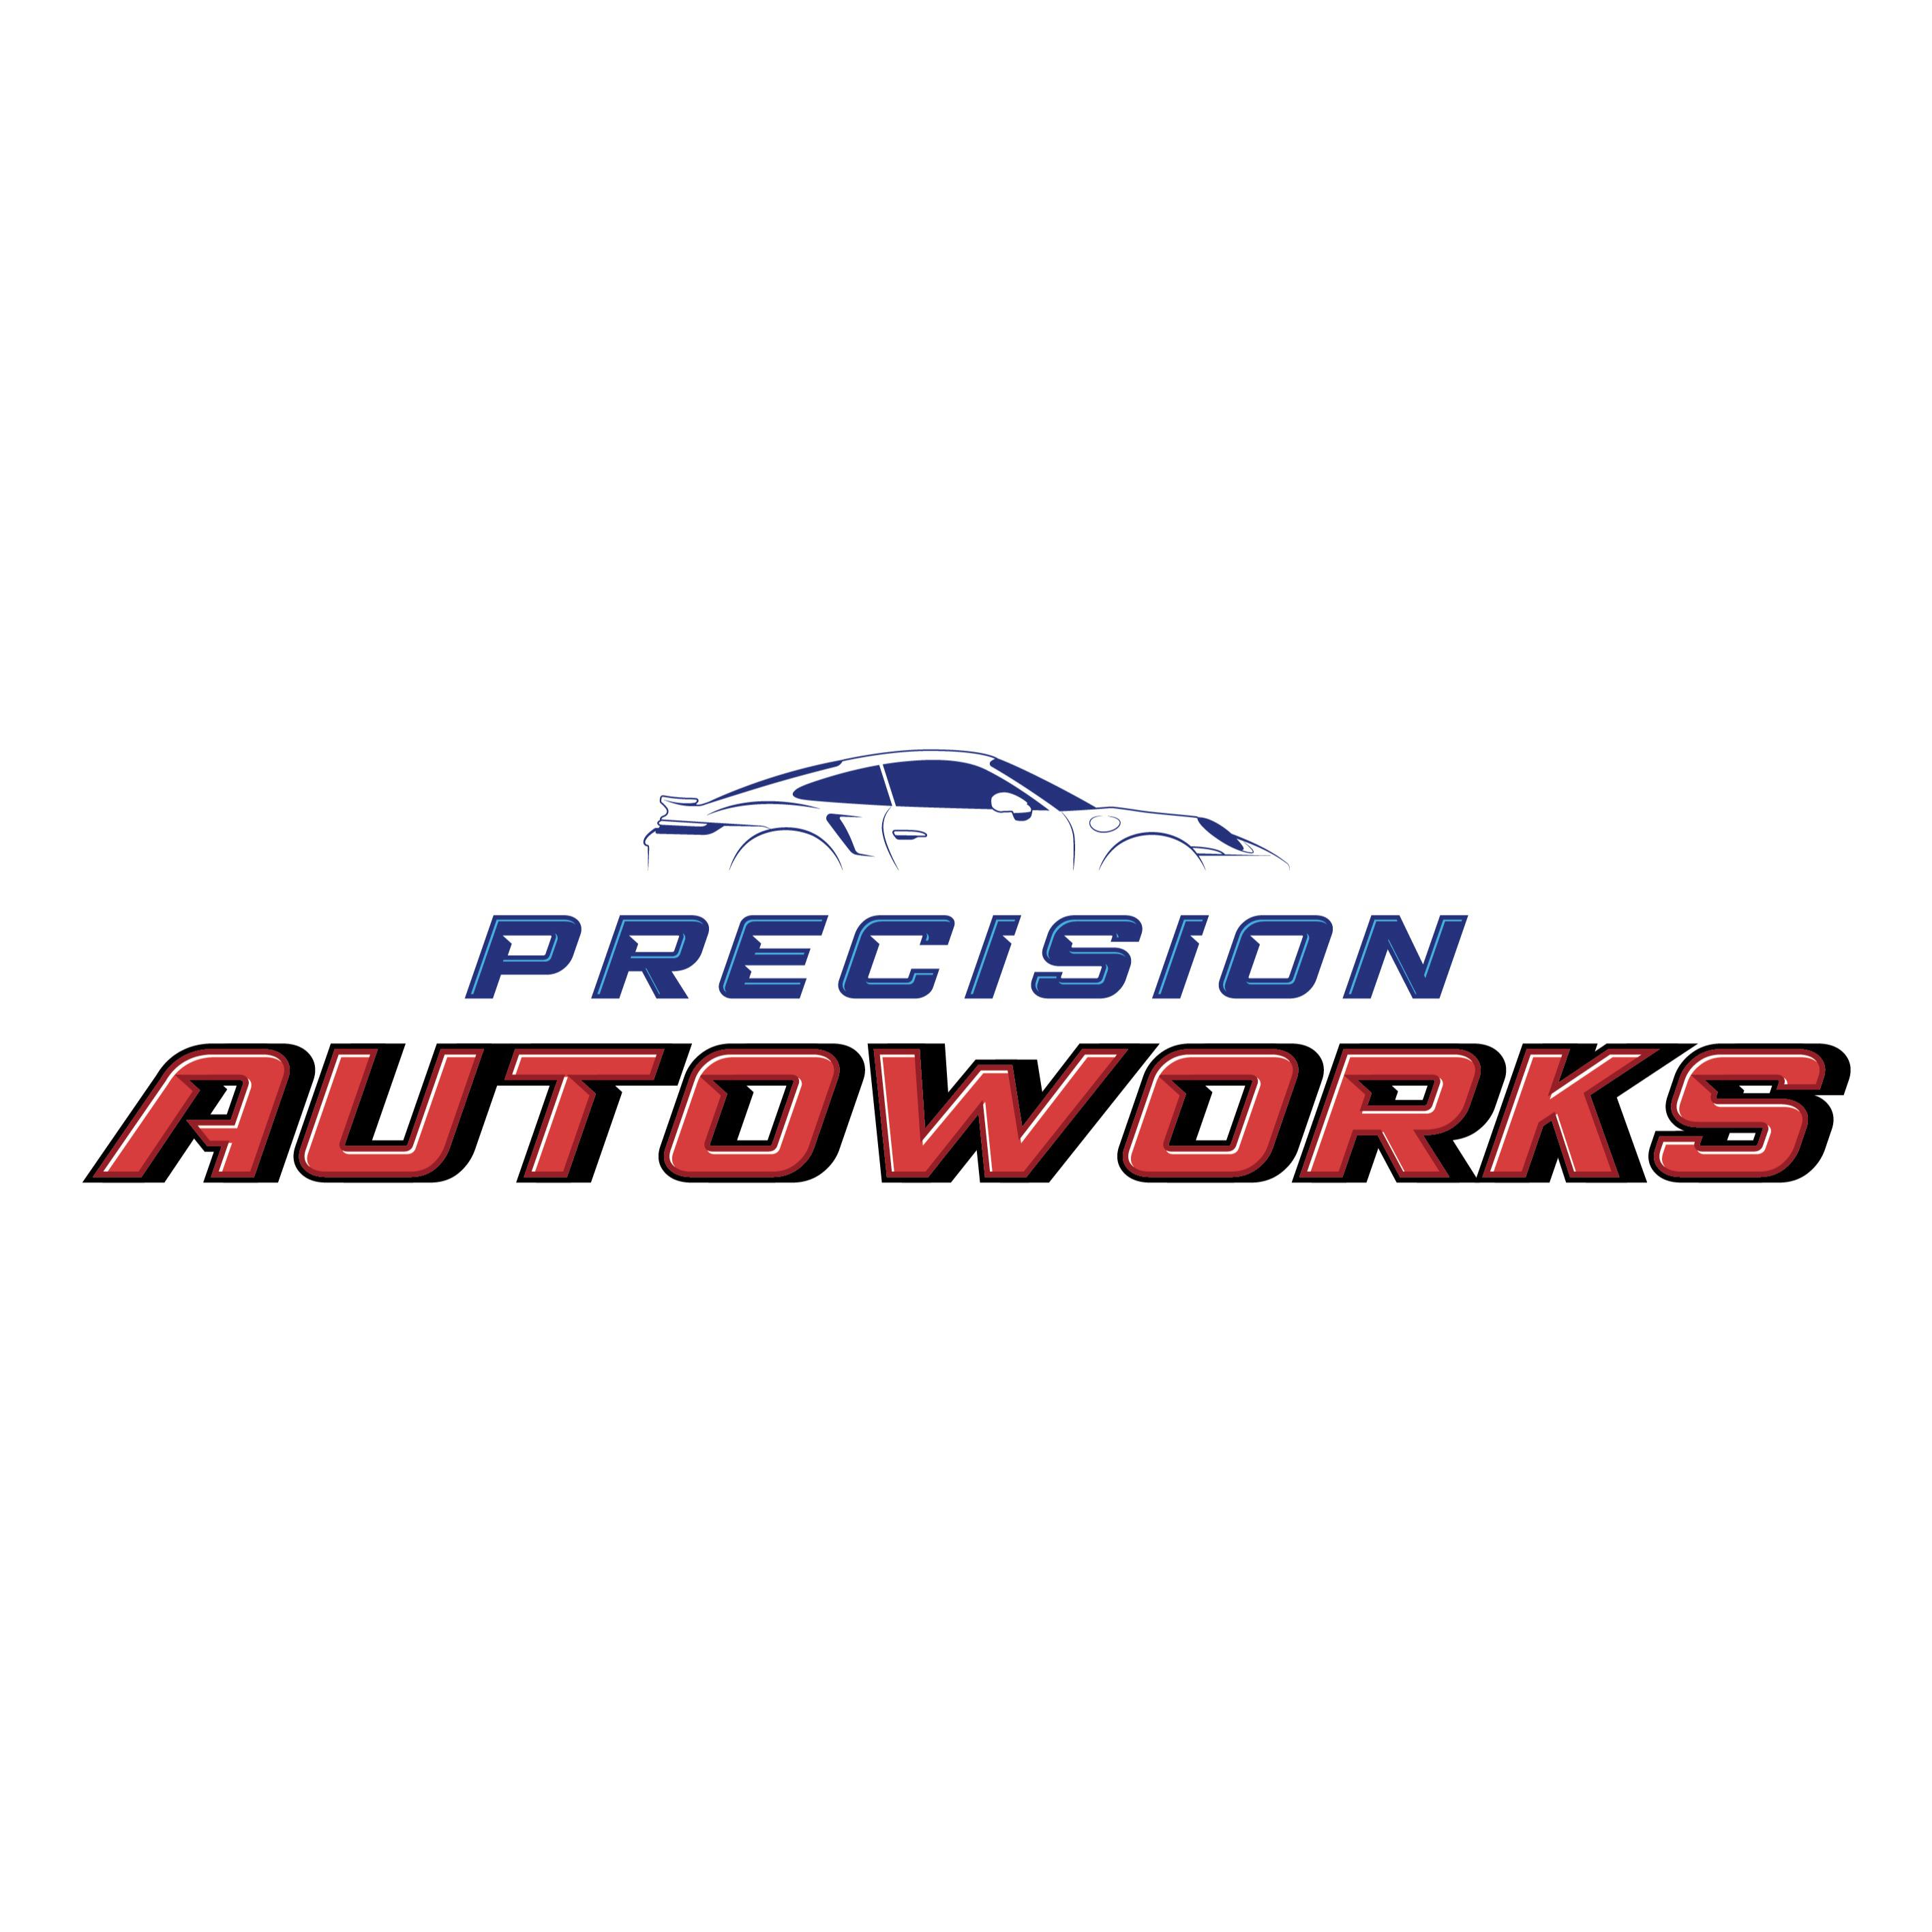 Precision Autoworks - Manchester, NH 03103 - (603)645-9878 | ShowMeLocal.com